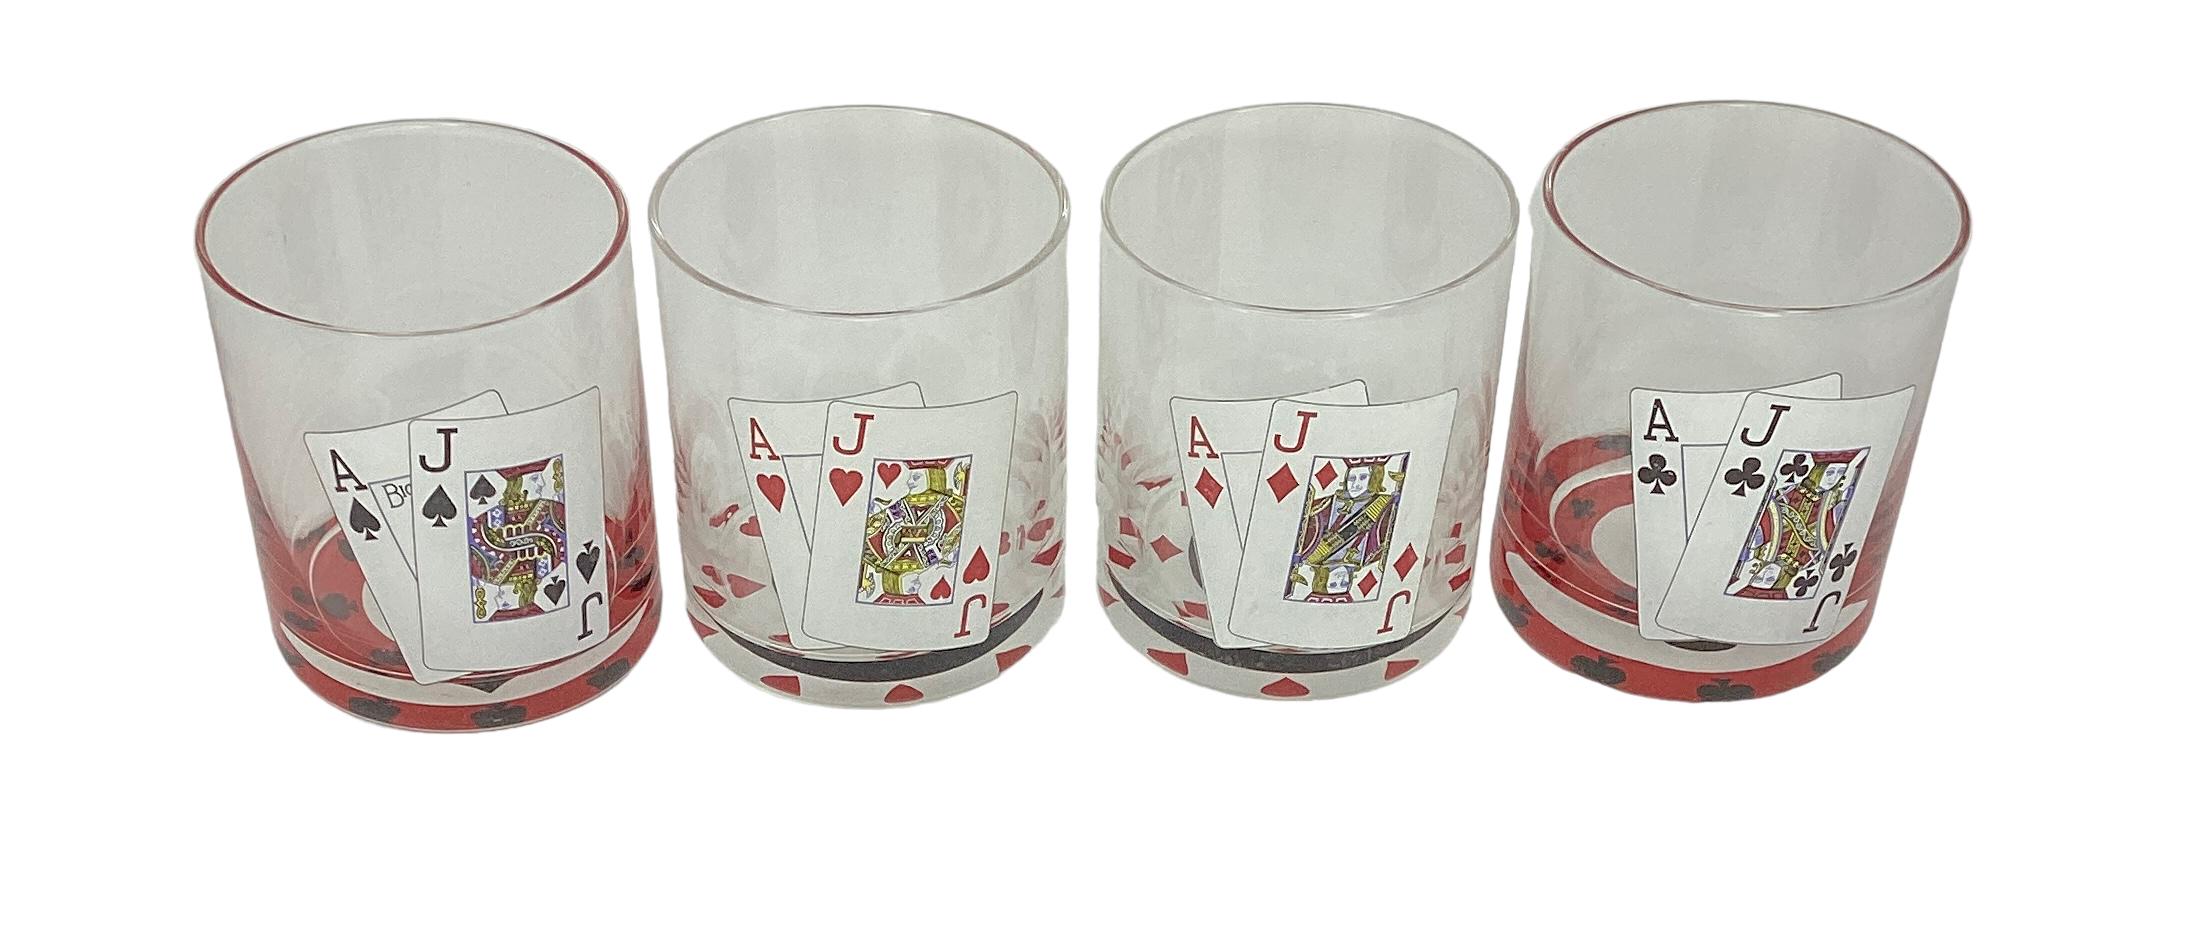 Satz von 4 Vintage Blackjack Double Rocks Gläsern. Jedes Glas mit einem Blackjack-Blatt und der Boden jedes Glases mit den Suiten von Karo, Herz, Club und Pik.